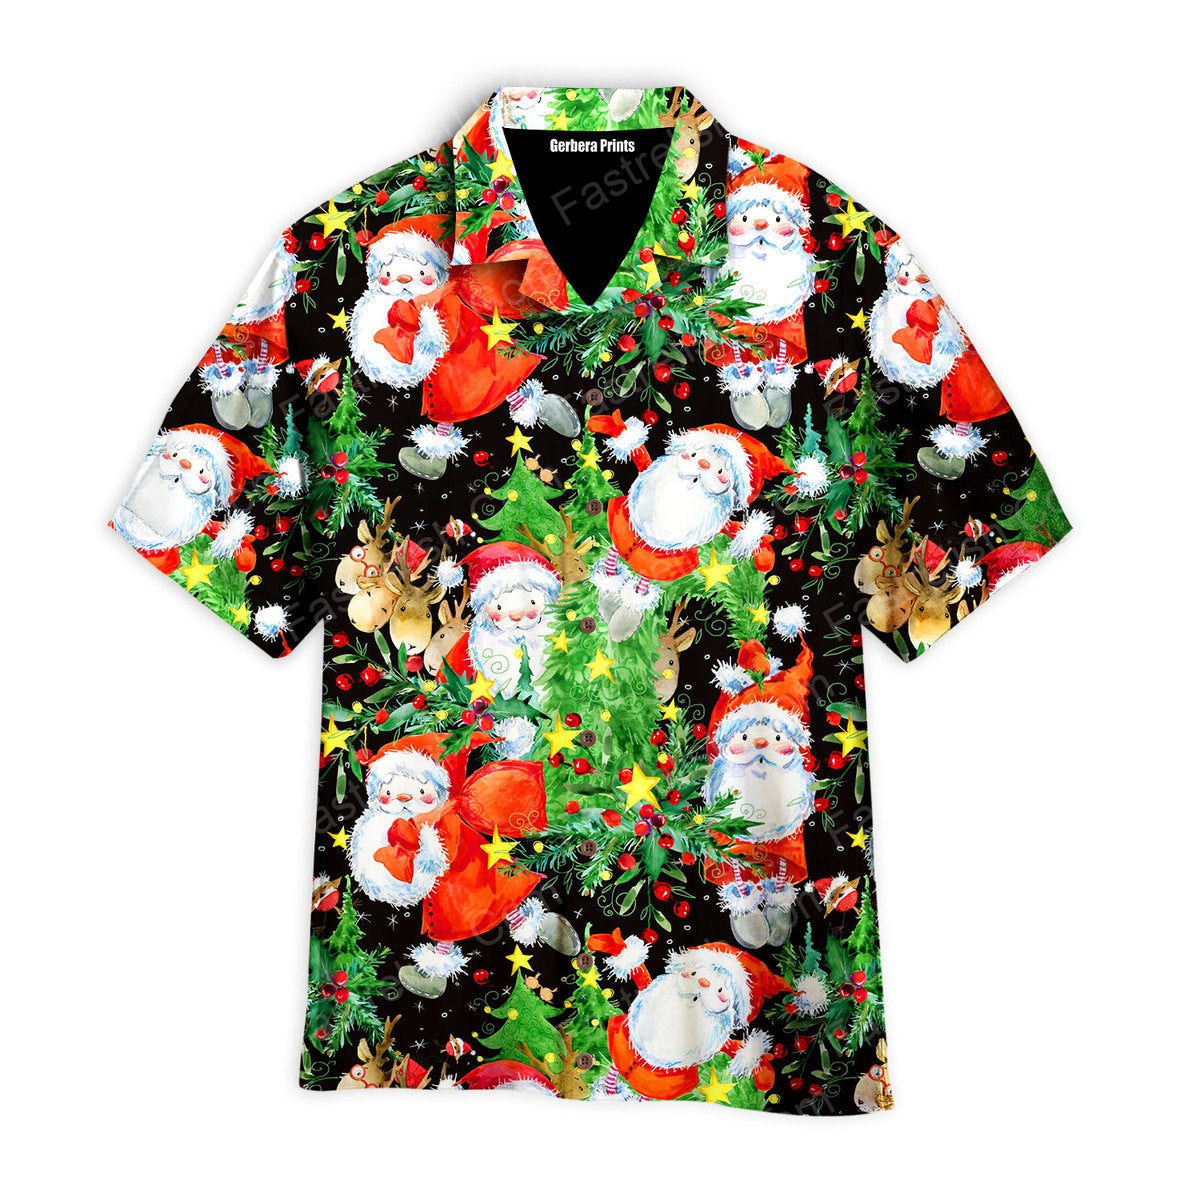 Christmas Santa Claus In Daily Life Pattern Hawaiian Shirts WT7493